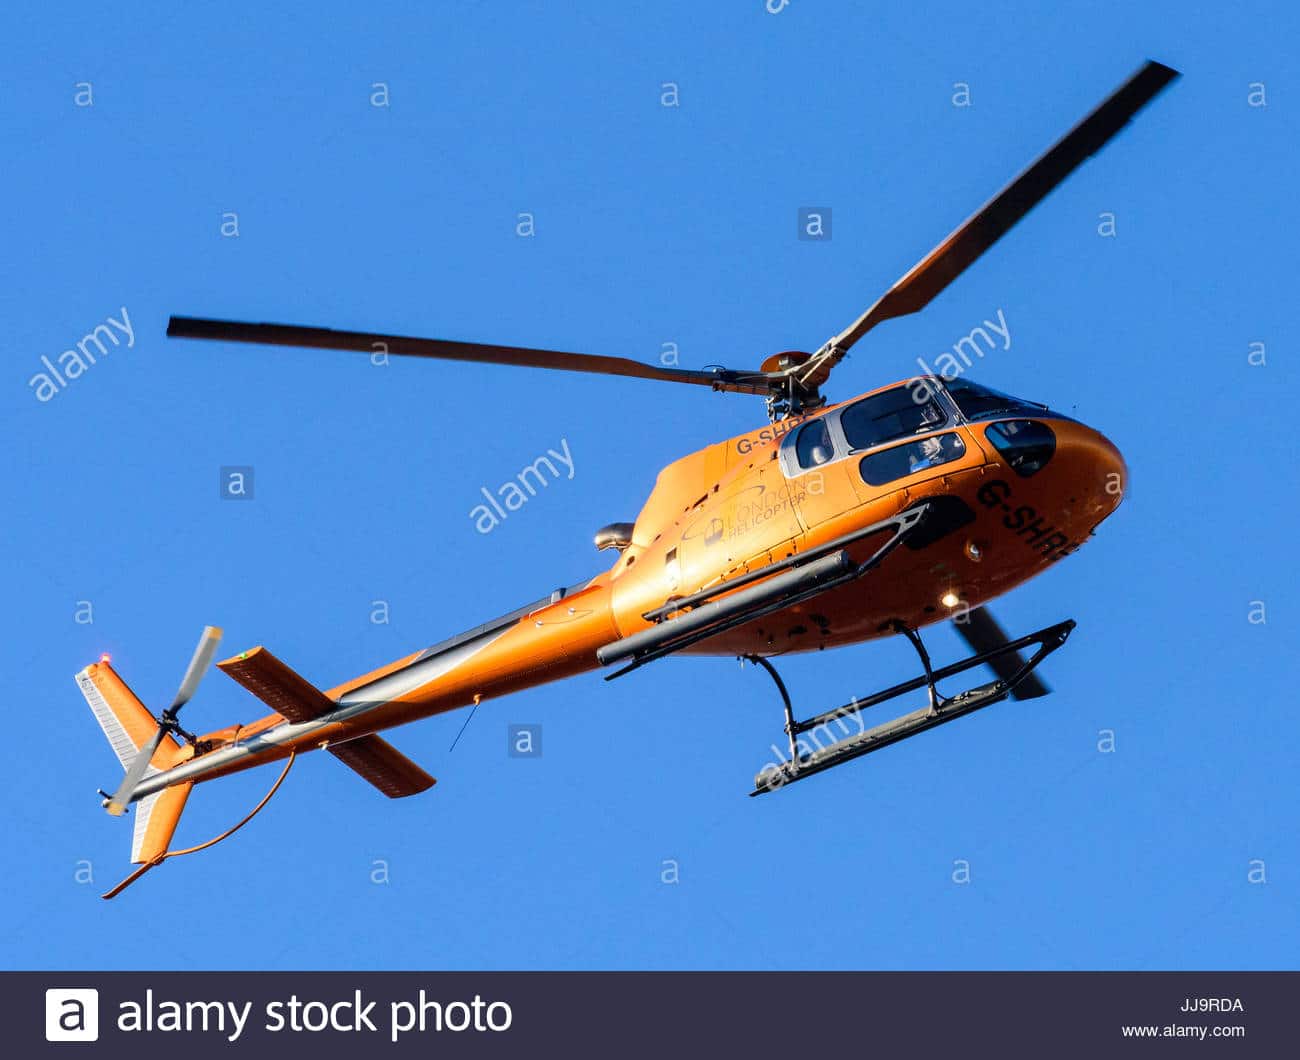 Insolite-Allou Kagne : Un hélicoptère de couleur orange survole la localité tous les mercredis !